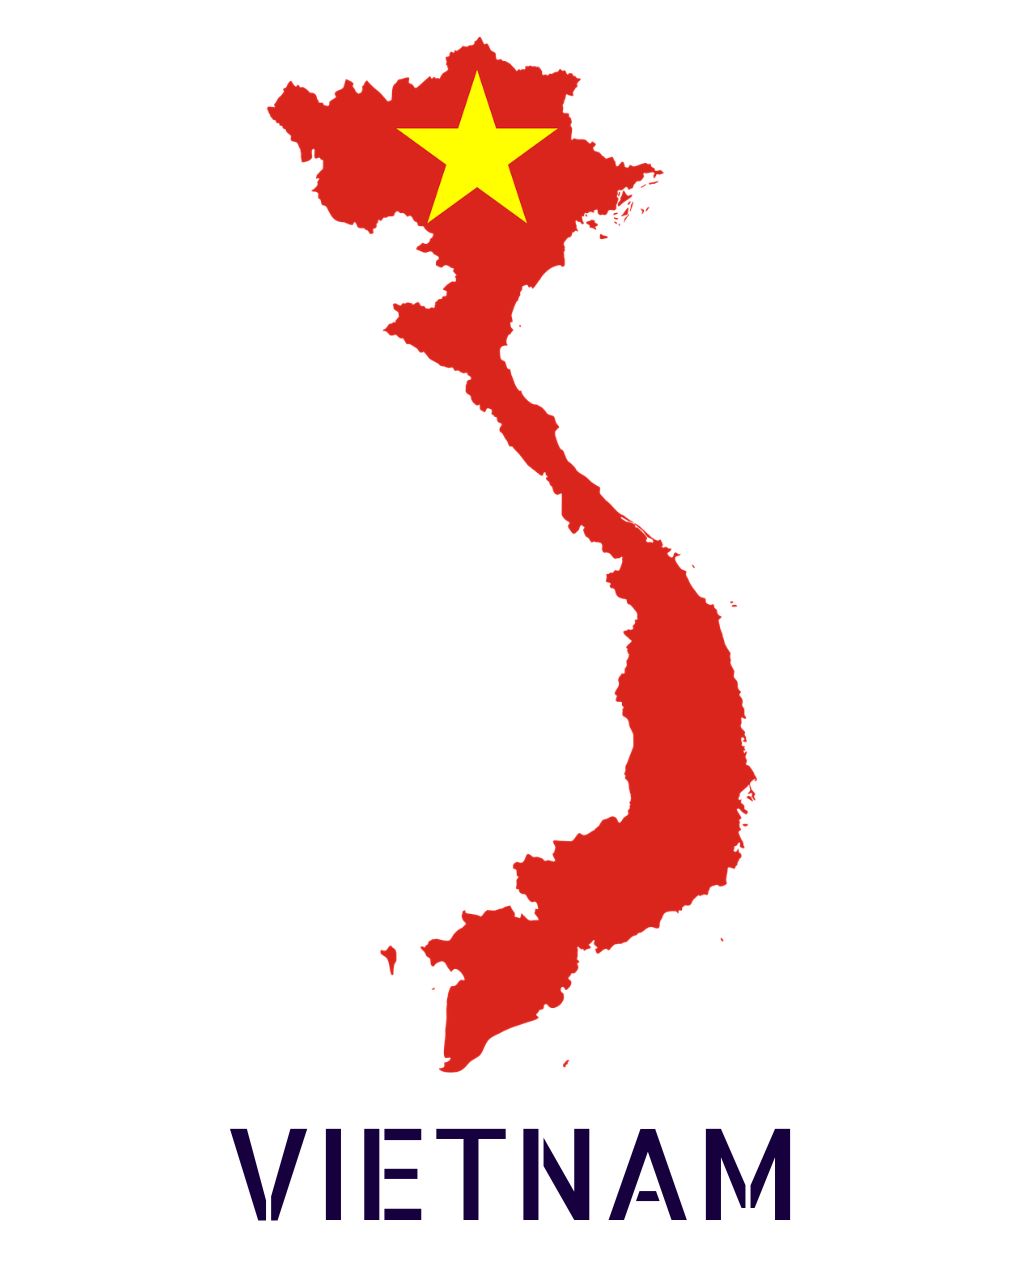 Vietnam Tour Package